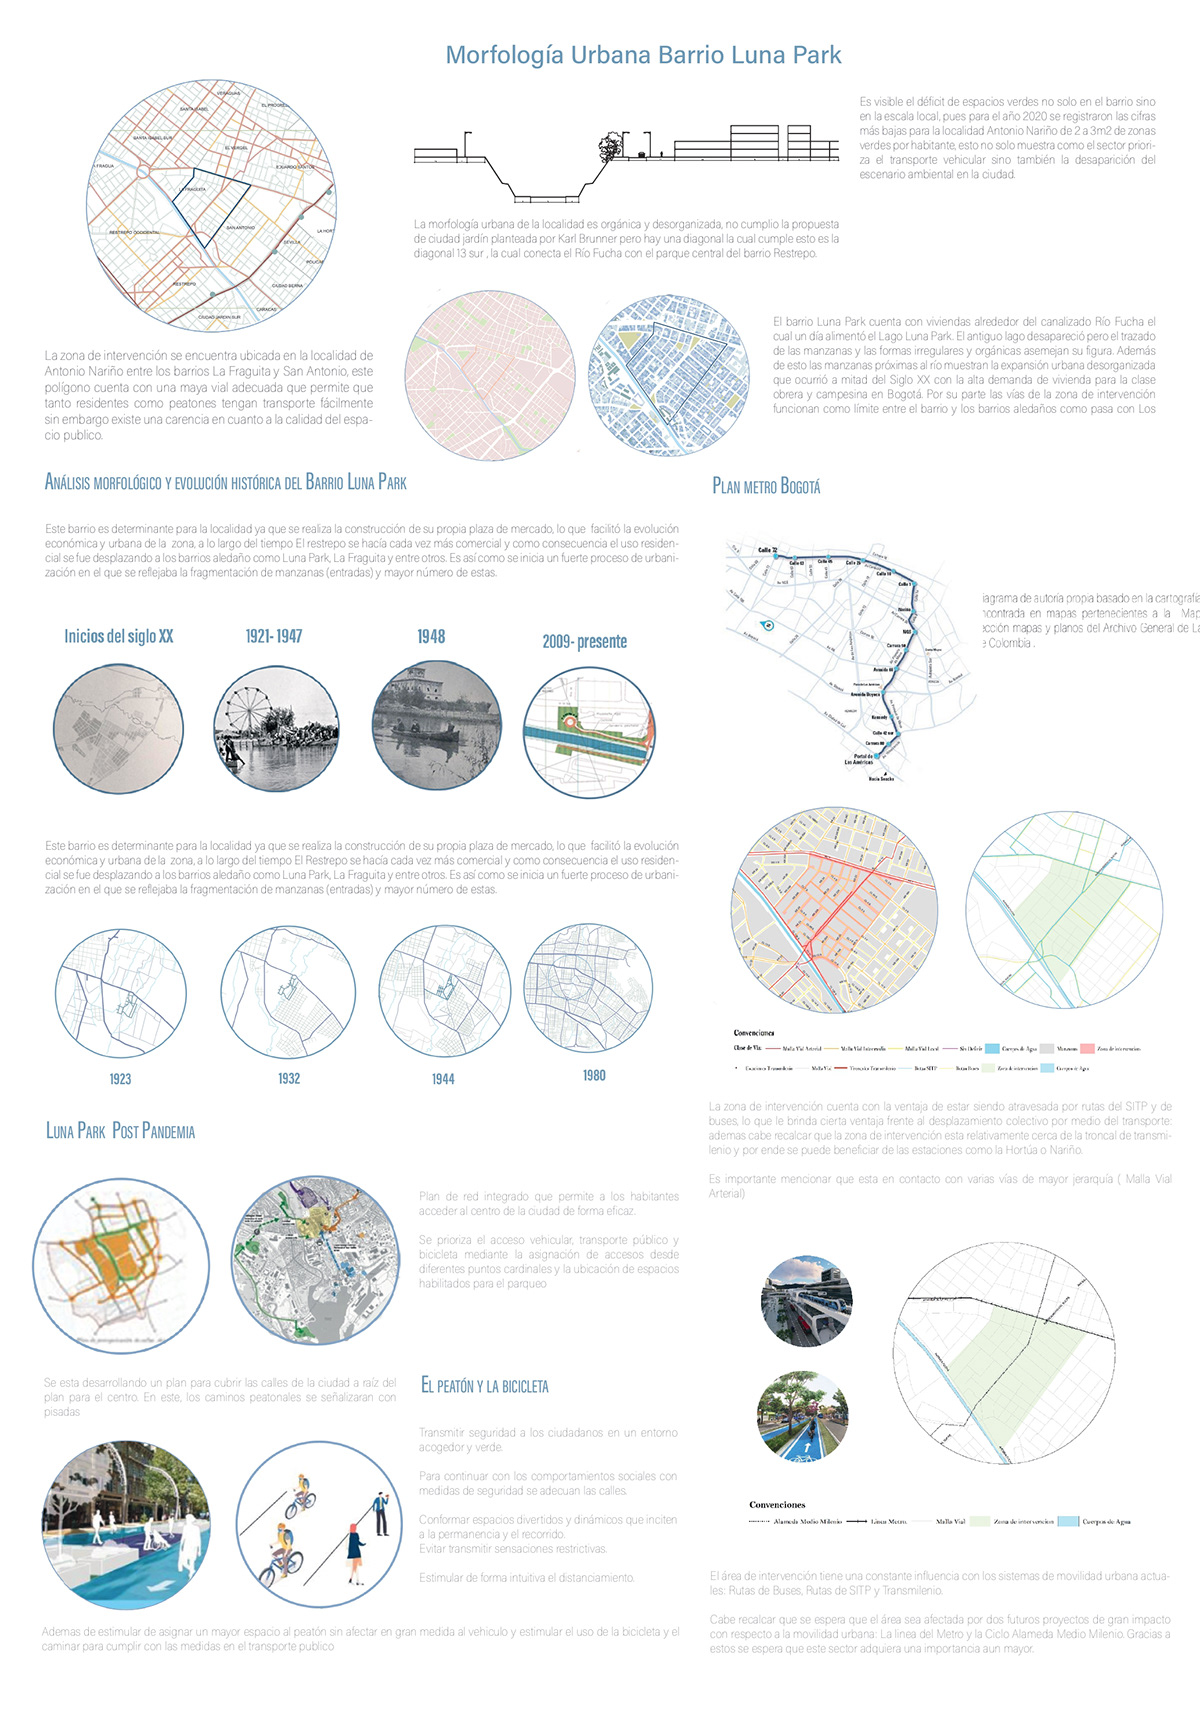 Analisis arquitectura barrio luna park Morfologia Urbana proyecto Universidad de los Andes ARQU2363